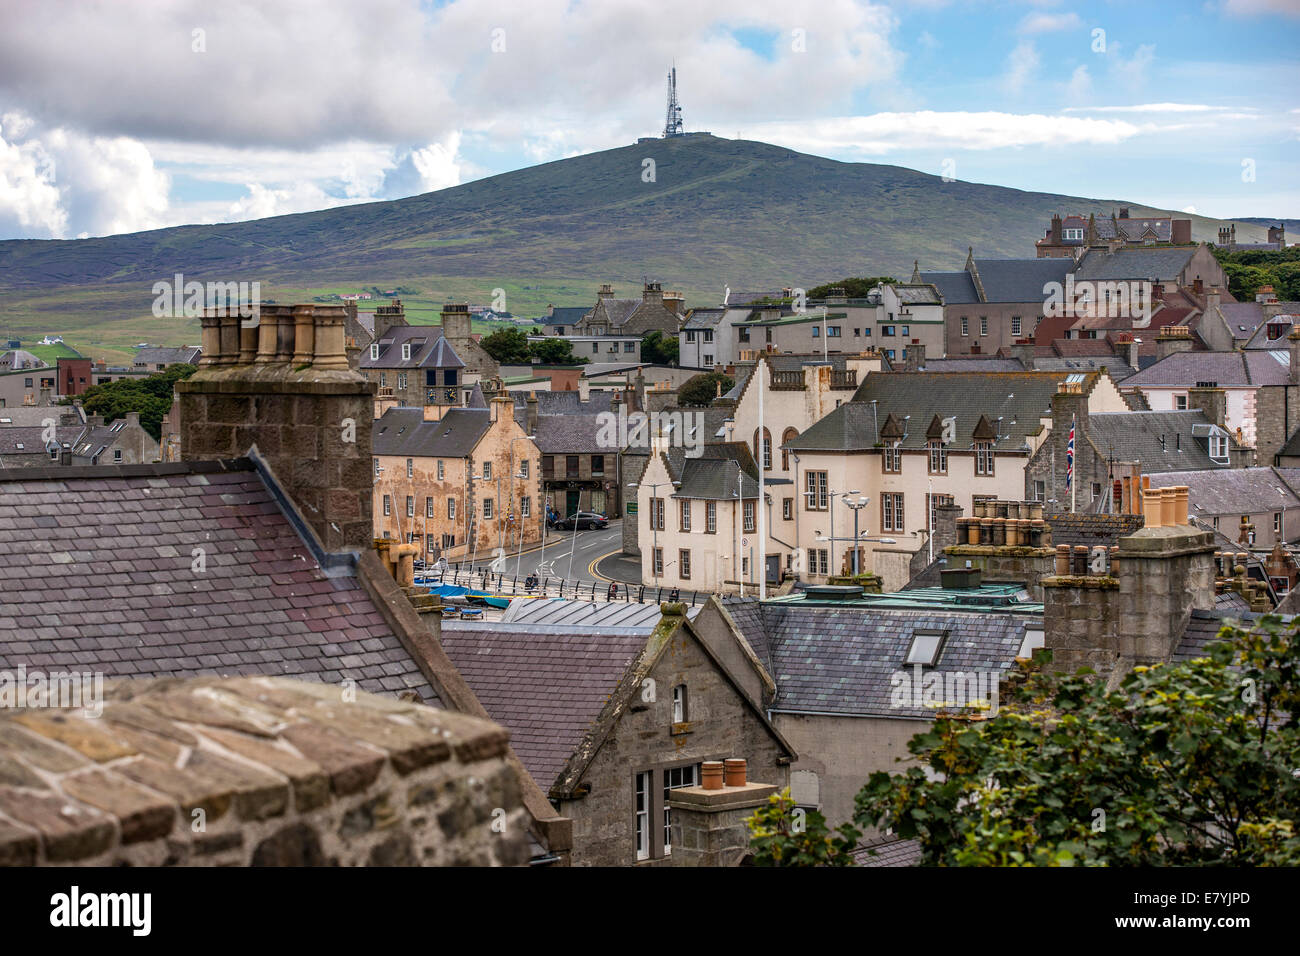 Lerwick, Shetland, Schottland, Vereinigtes Königreich. Globale Sicht auf die Altstadt von 400 Jahren (17. Jh.) mit seiner charakteristischen gra Stockfoto